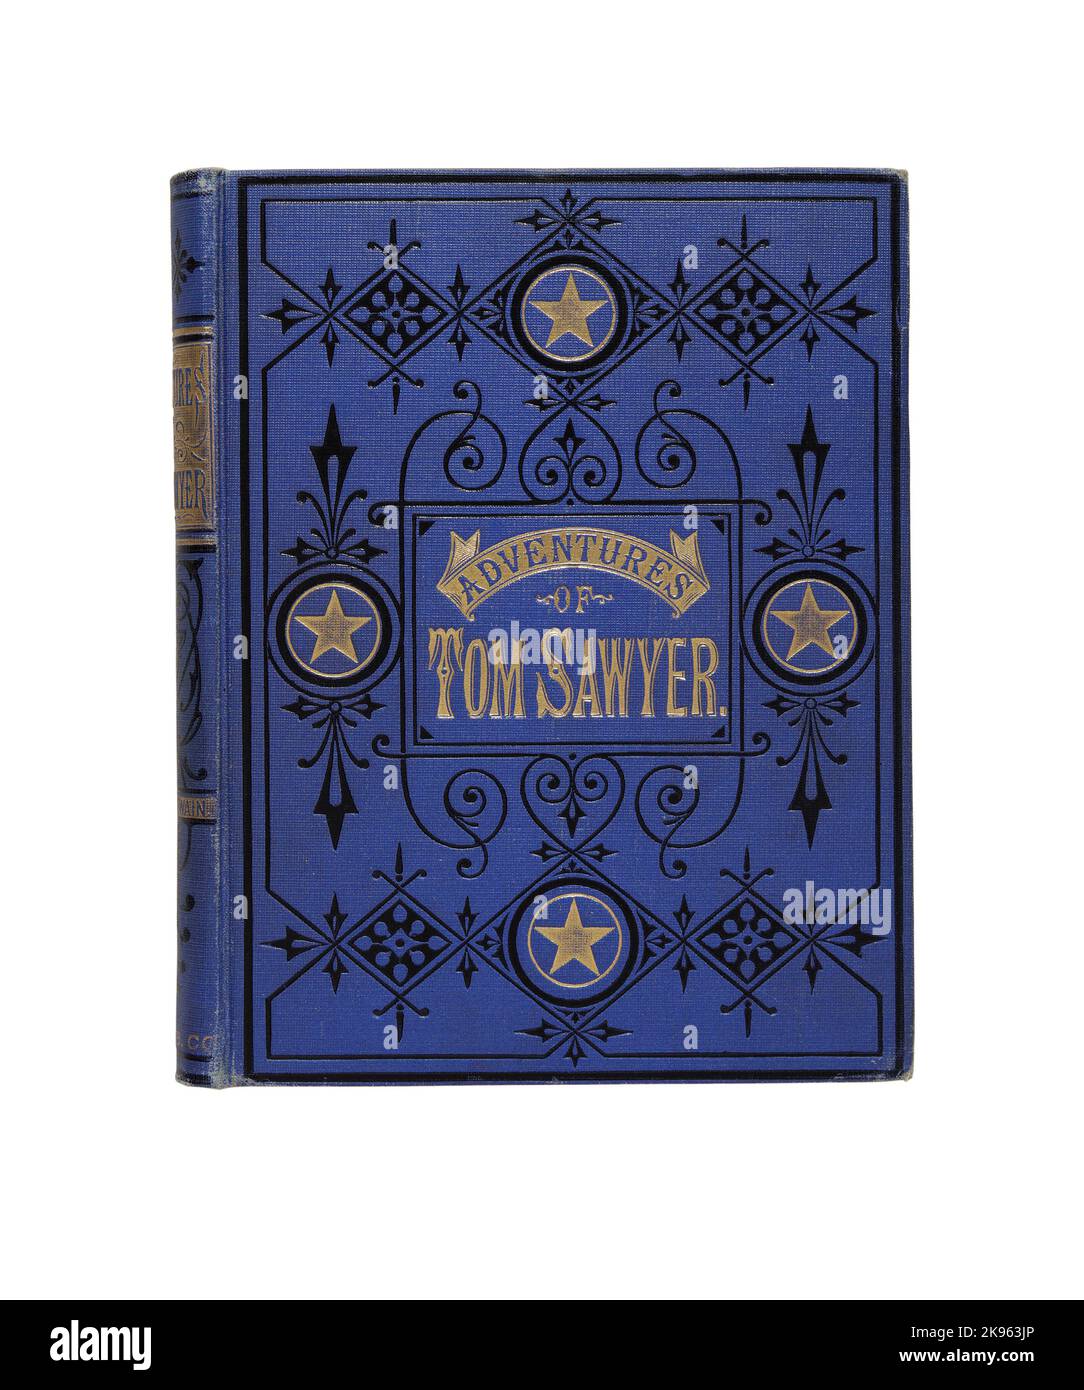 Libro Adventures of Tom Sawyer por Mark Twain 1876 Foto de stock